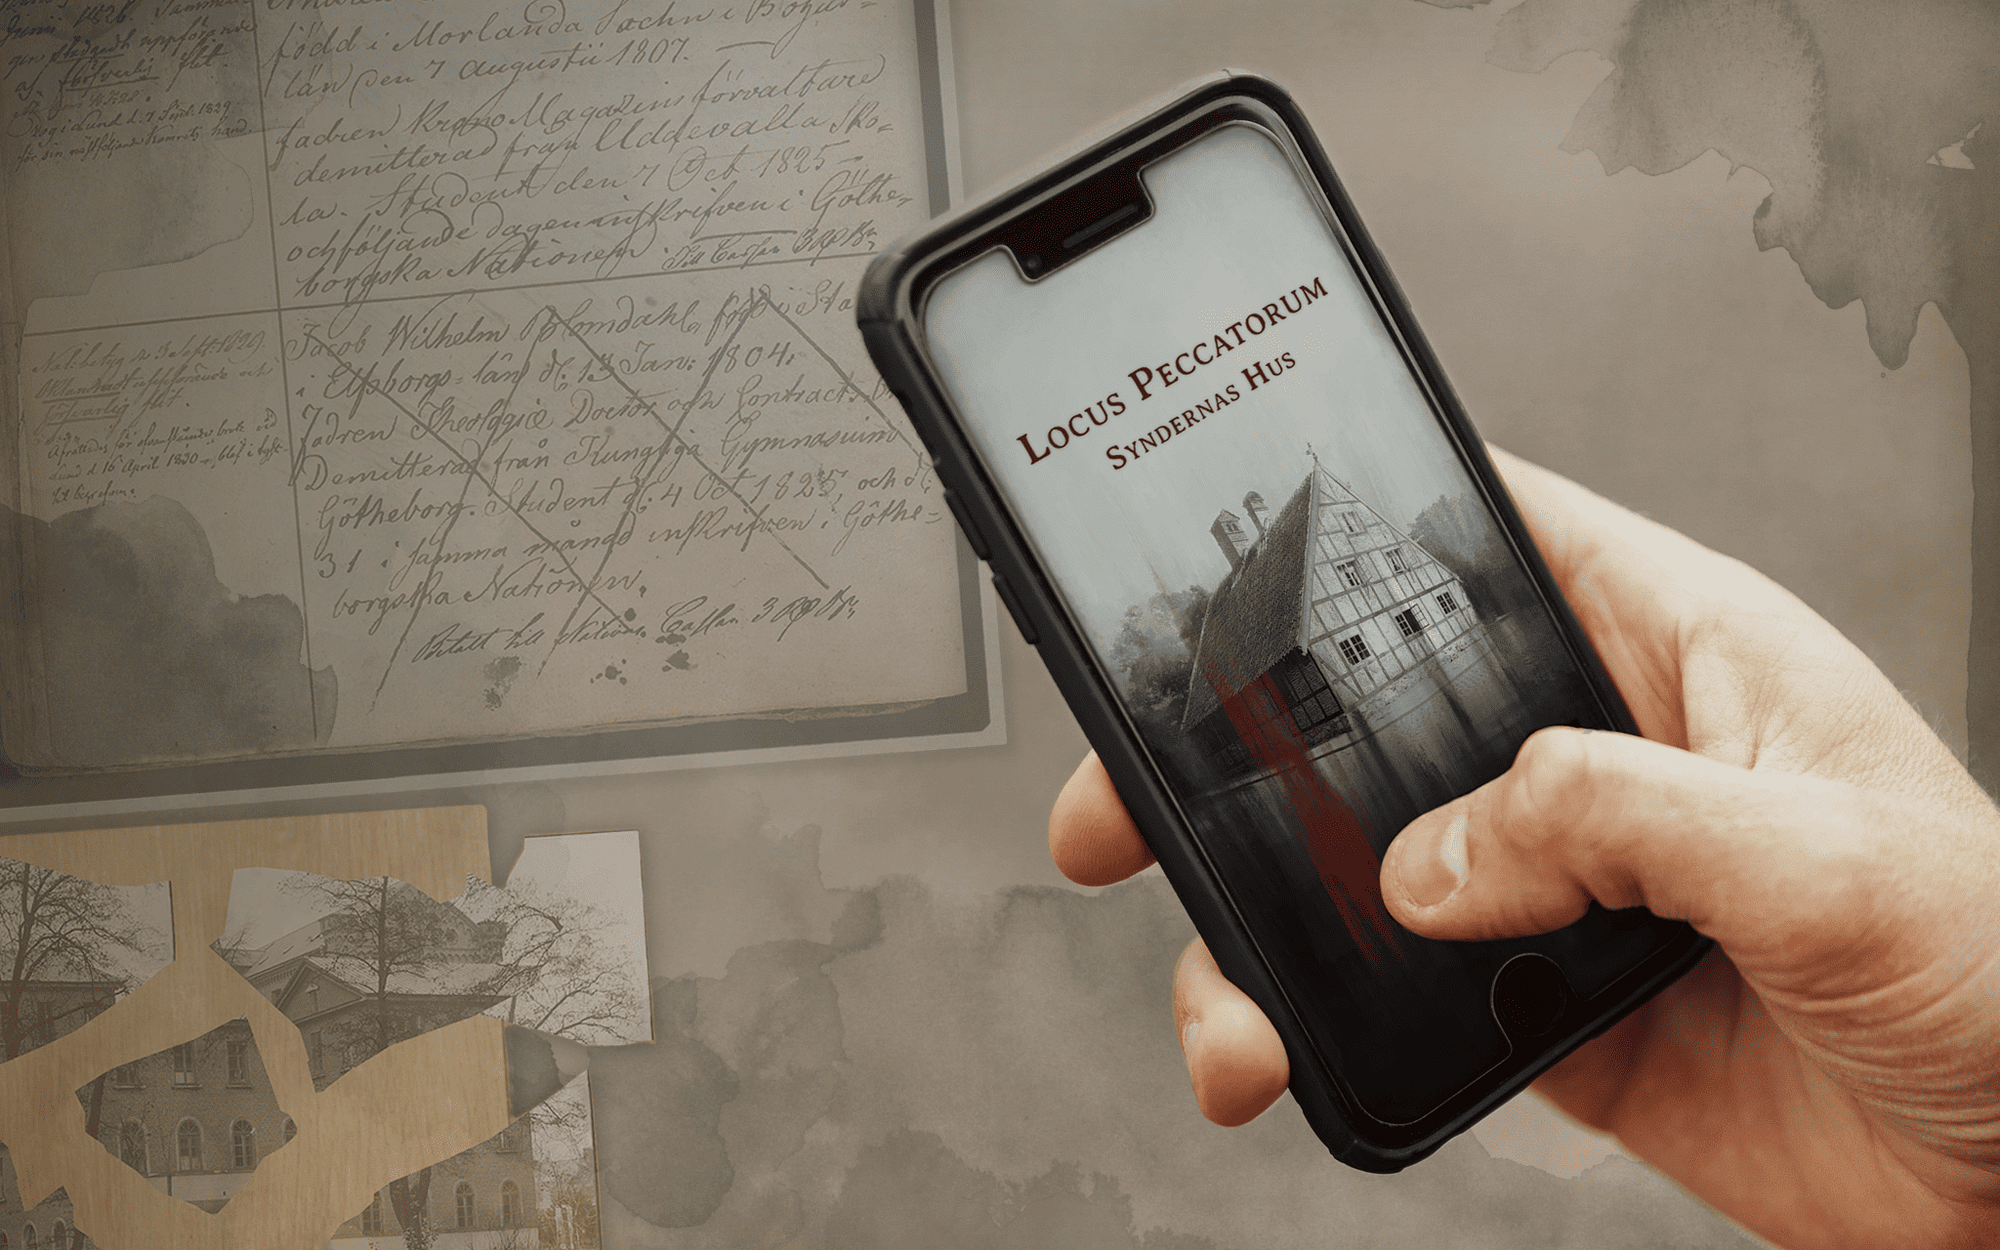 En hand håller en smarttelefon. På skärmen syns texten "Locus Peccatorum - Syndernas Hus"